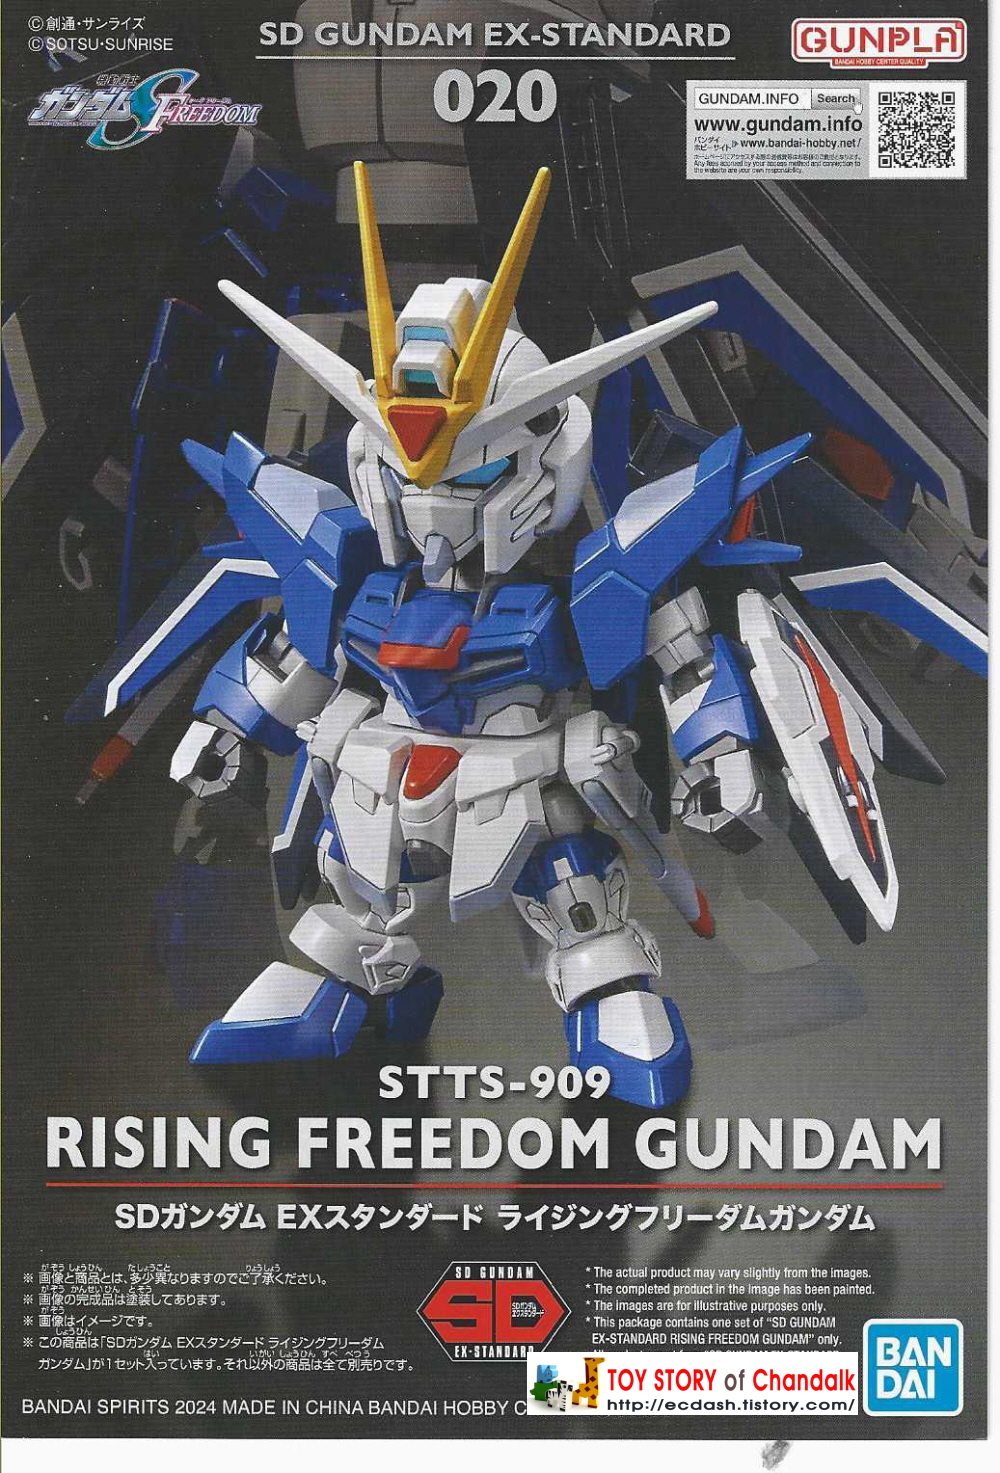 [반다이] BANDAI - SD GUNDAM EX-STANDARD 020 STTS-909 RISING FREEDOM GUNDAM (라이징 프리덤 건담)